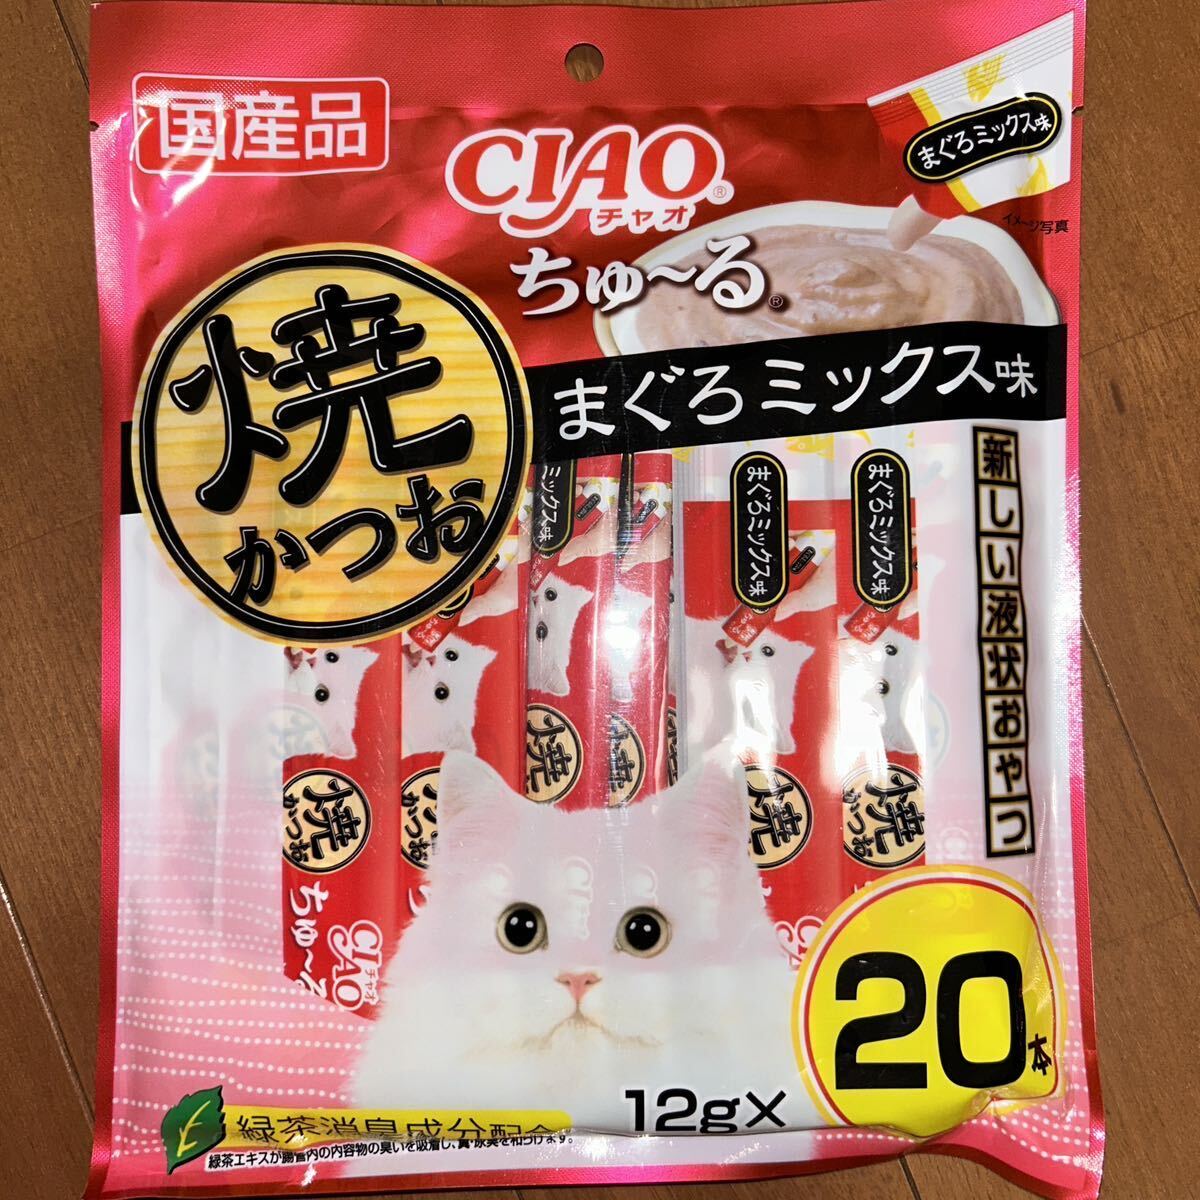 i..CIAO Ciao ..~...-.. и .... Mix тест 12g×20шт.@×3 пакет кошка для жидкость форма закуска местного производства товар сохранение стоимость не использование 